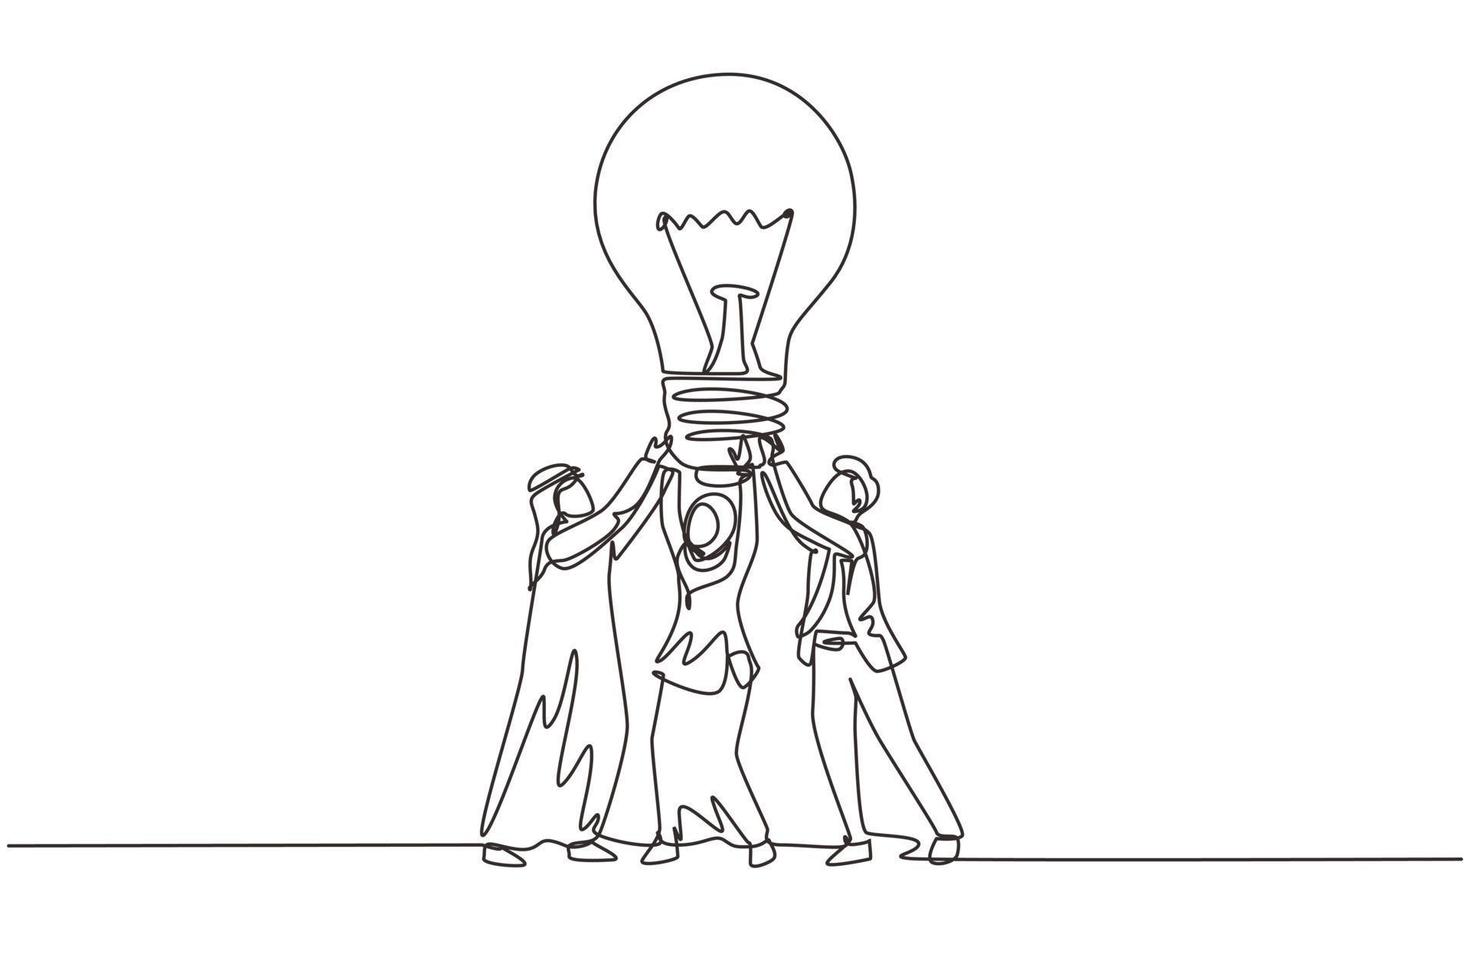 la gente araba del gruppo di disegno a linea continua singola tiene una nuova idea di lampada enorme. il successo negli affari si basa sul lavoro di squadra, sulla buona pianificazione, sulla ricerca di soluzioni creative. illustrazione vettoriale di un disegno di linea